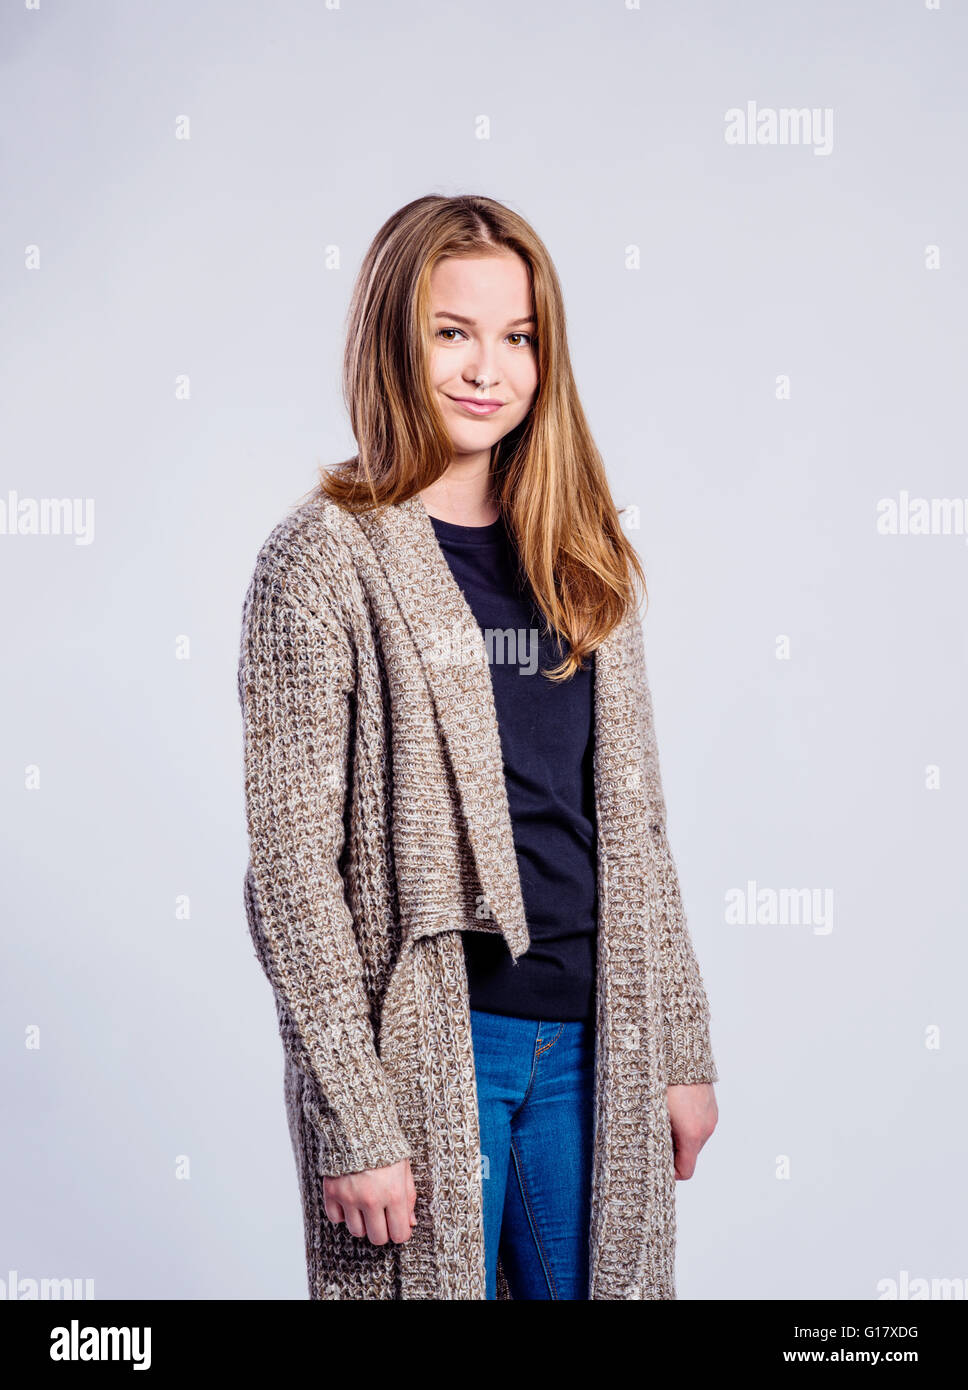 Chica en jeans y suéter largo, mujer, Foto de estudio Fotografía de stock -  Alamy